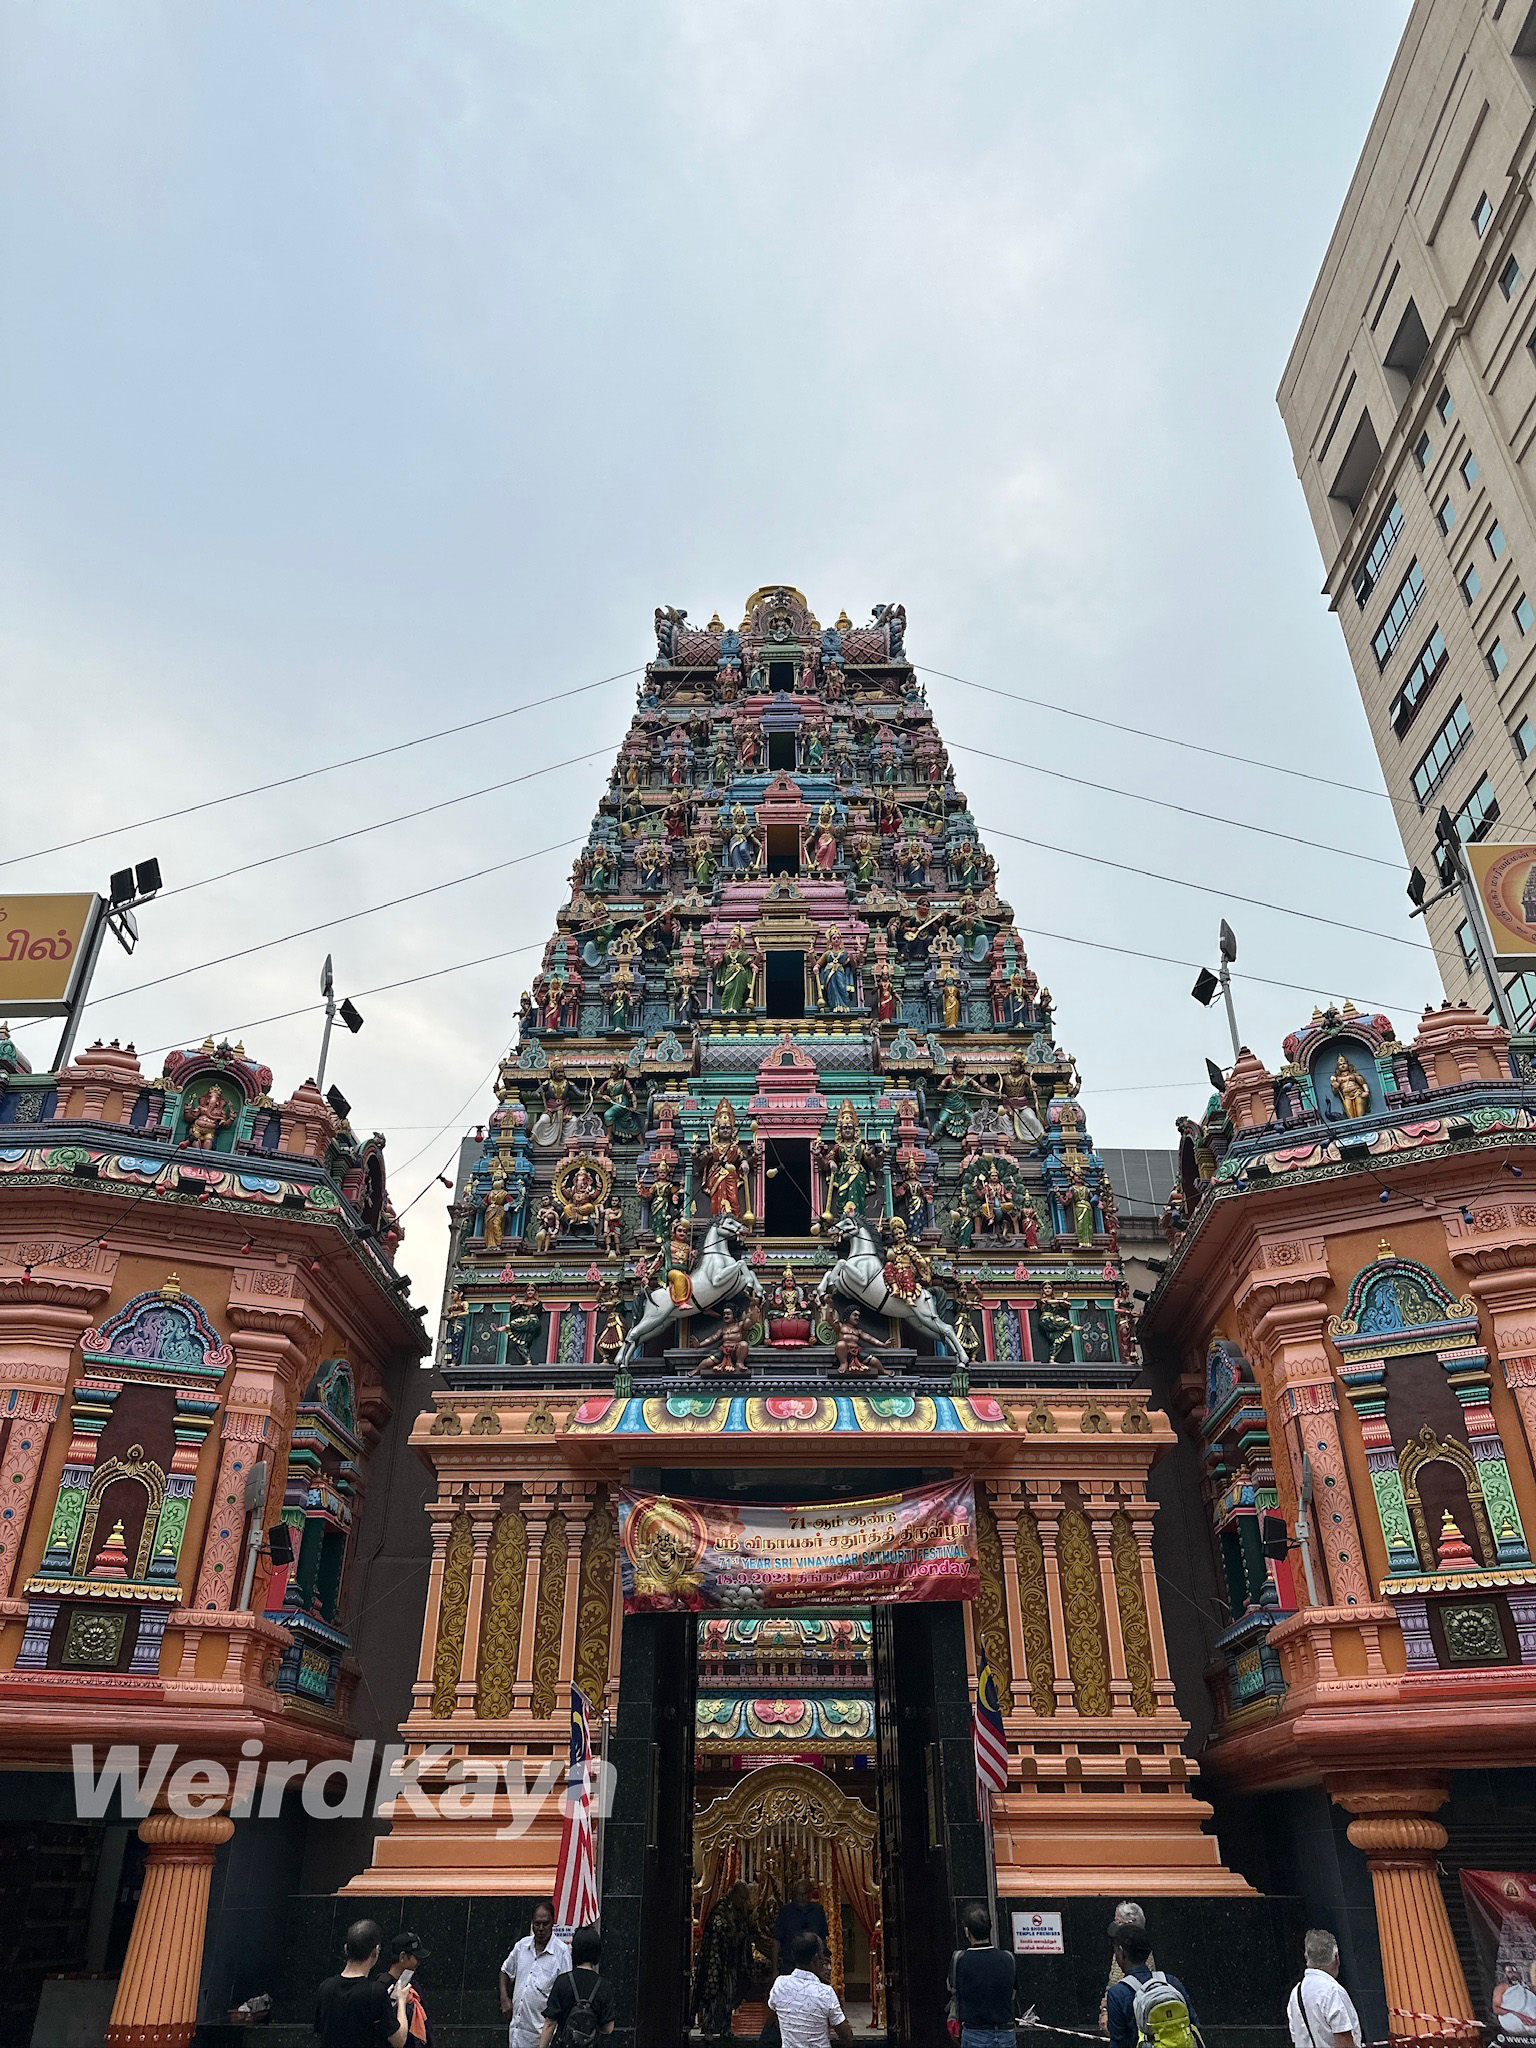 Indian temple at petaling street, kl